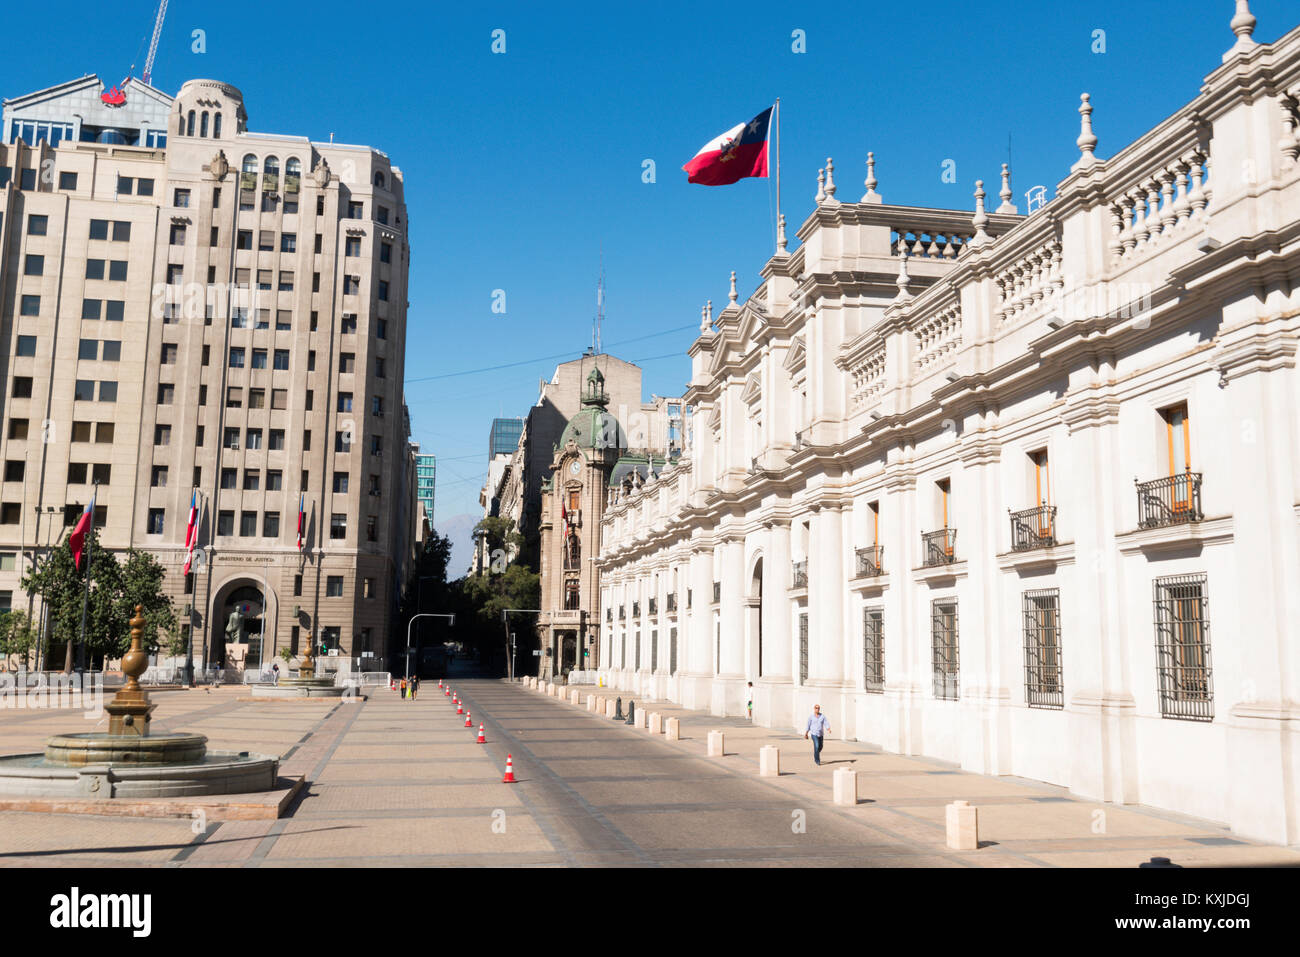 Plaza de la Constitución, Santiago de Chile Stock Photo